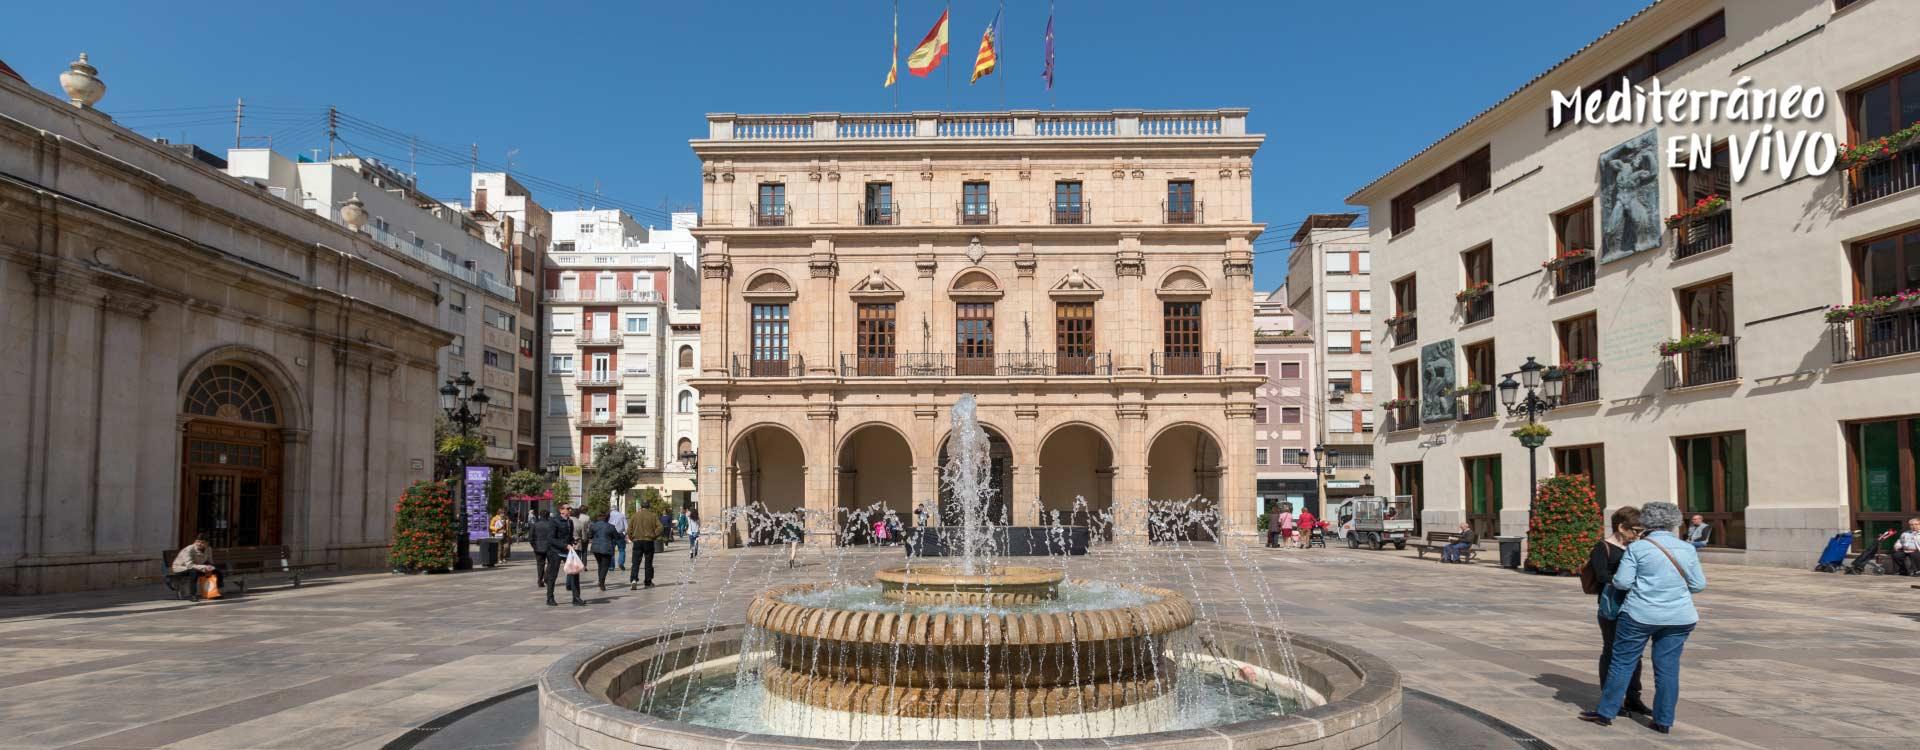 Plaza Mayor de Castellón de la Plana - Comunitat Valenciana